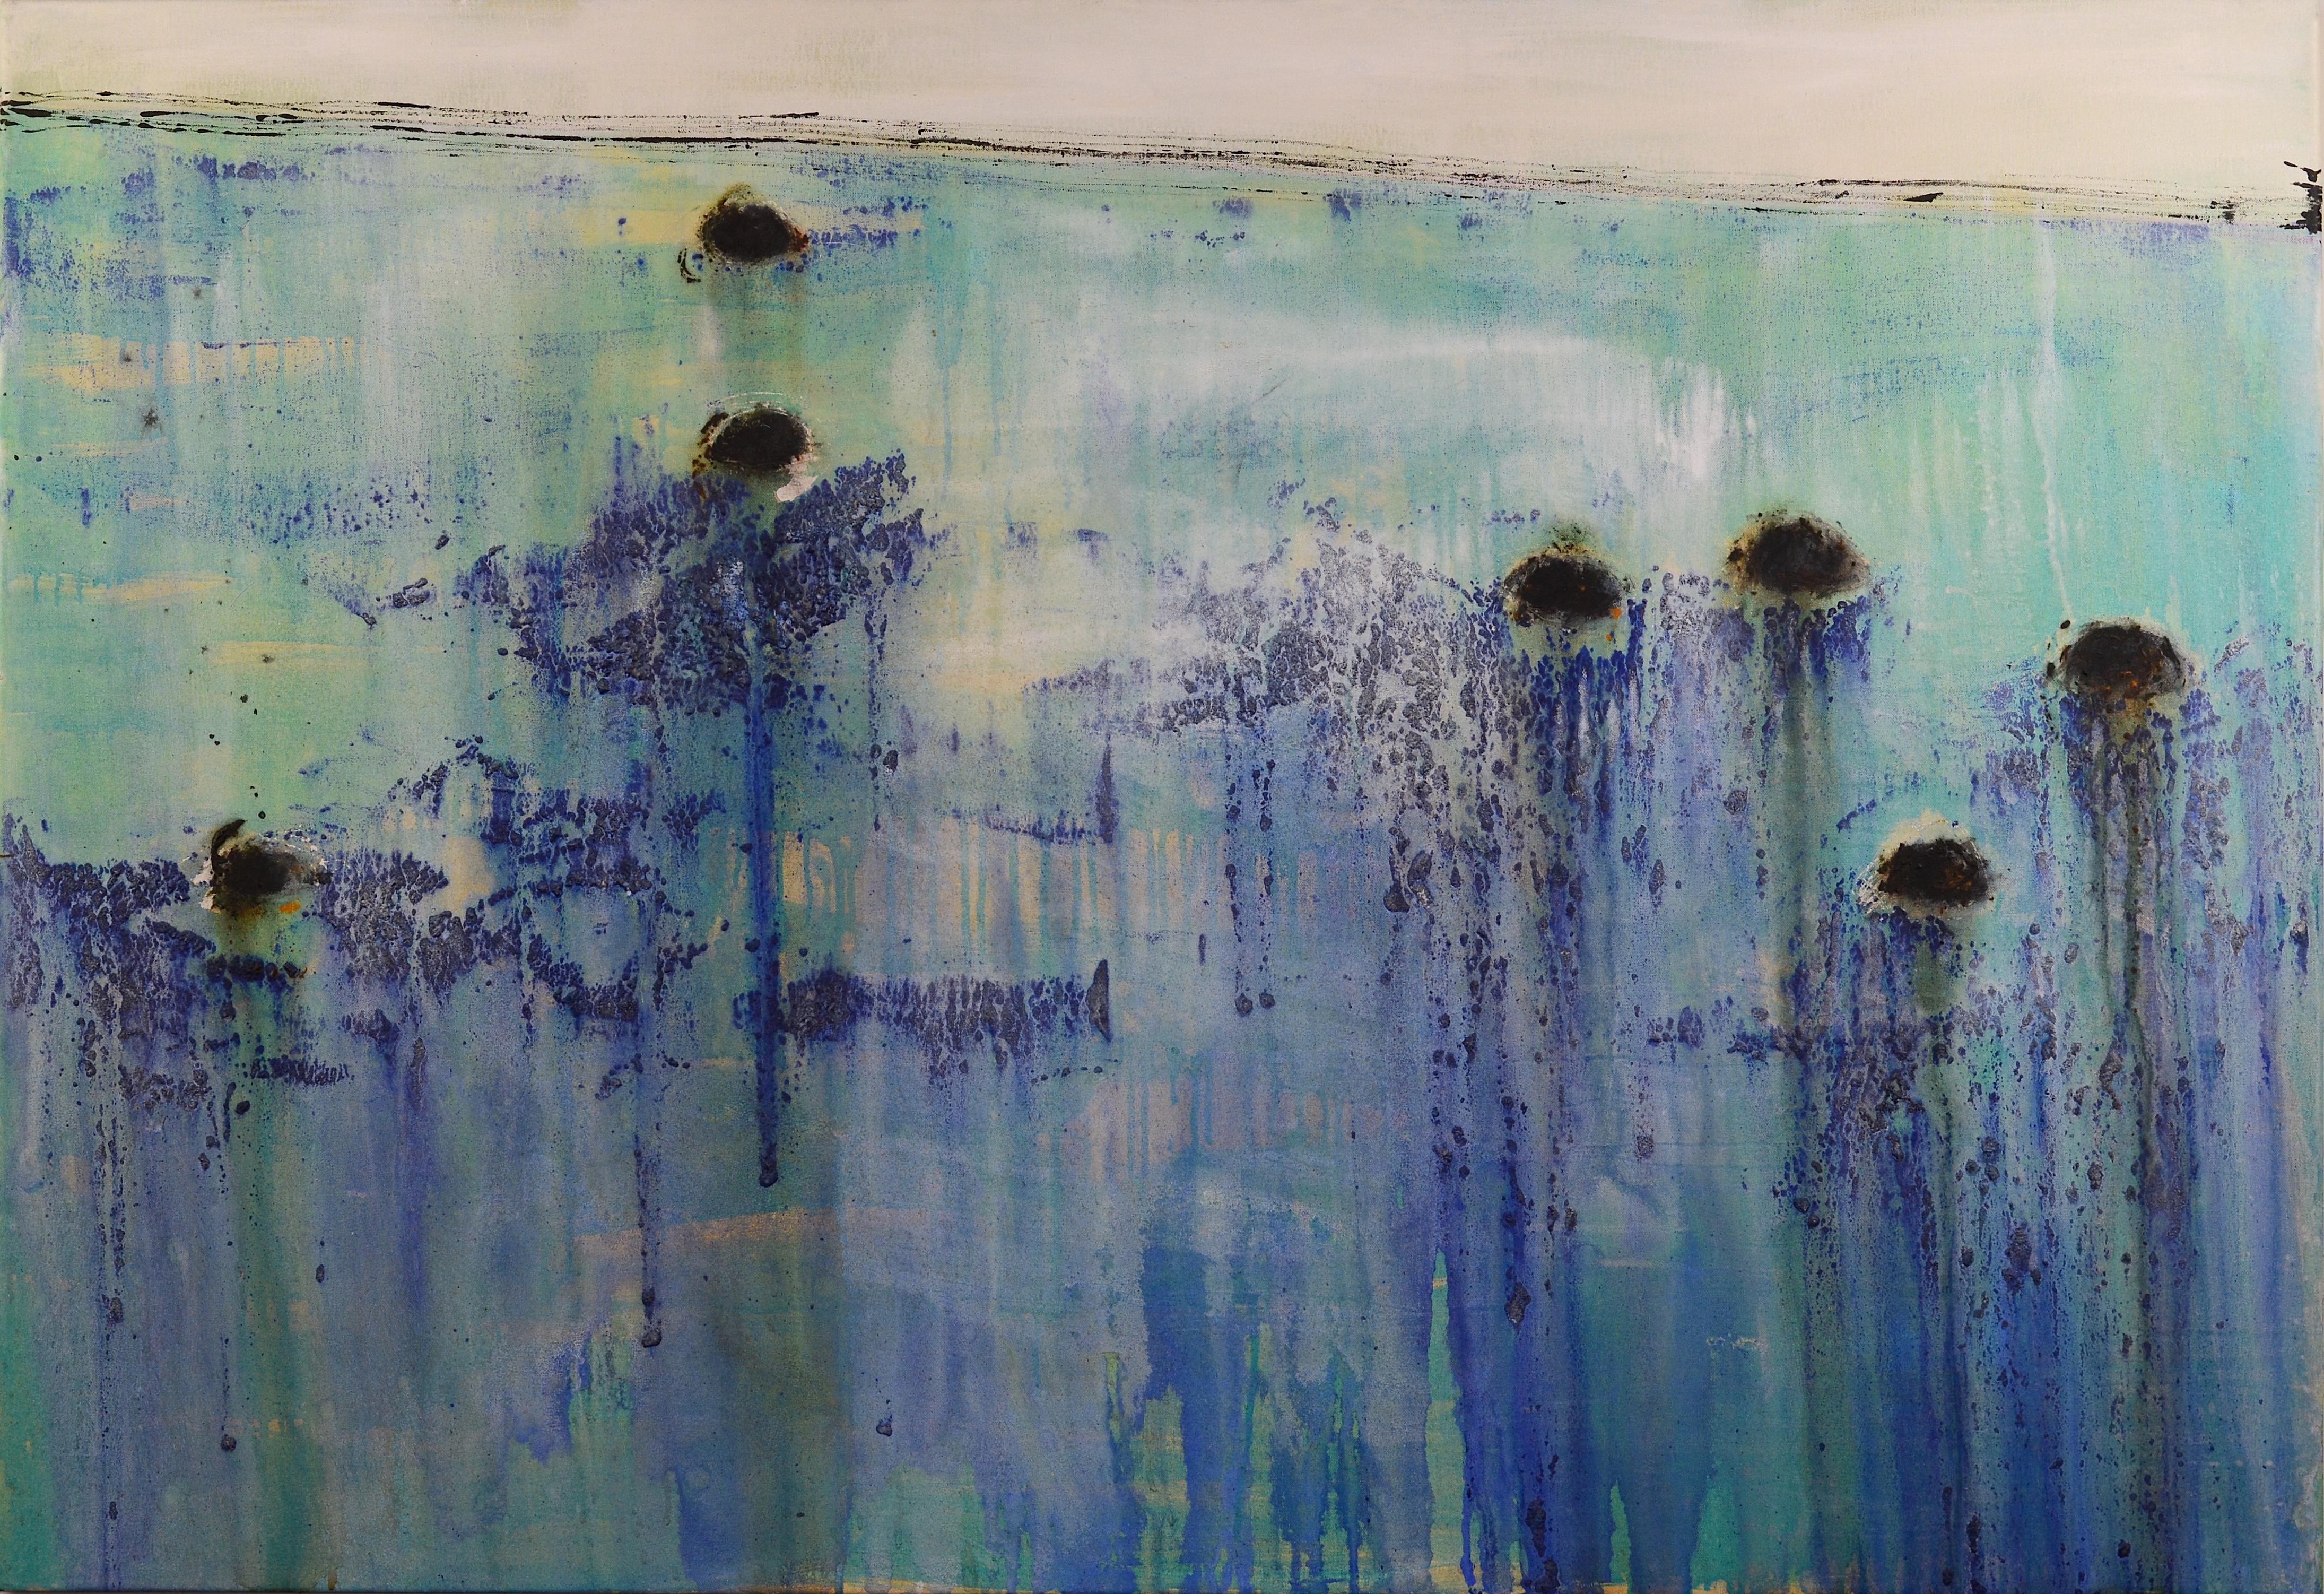 Abstract Painting PATTERSON, Yendris - Patterson 8 abstrait bleu et vert. bateaux. grande peinture acrylique